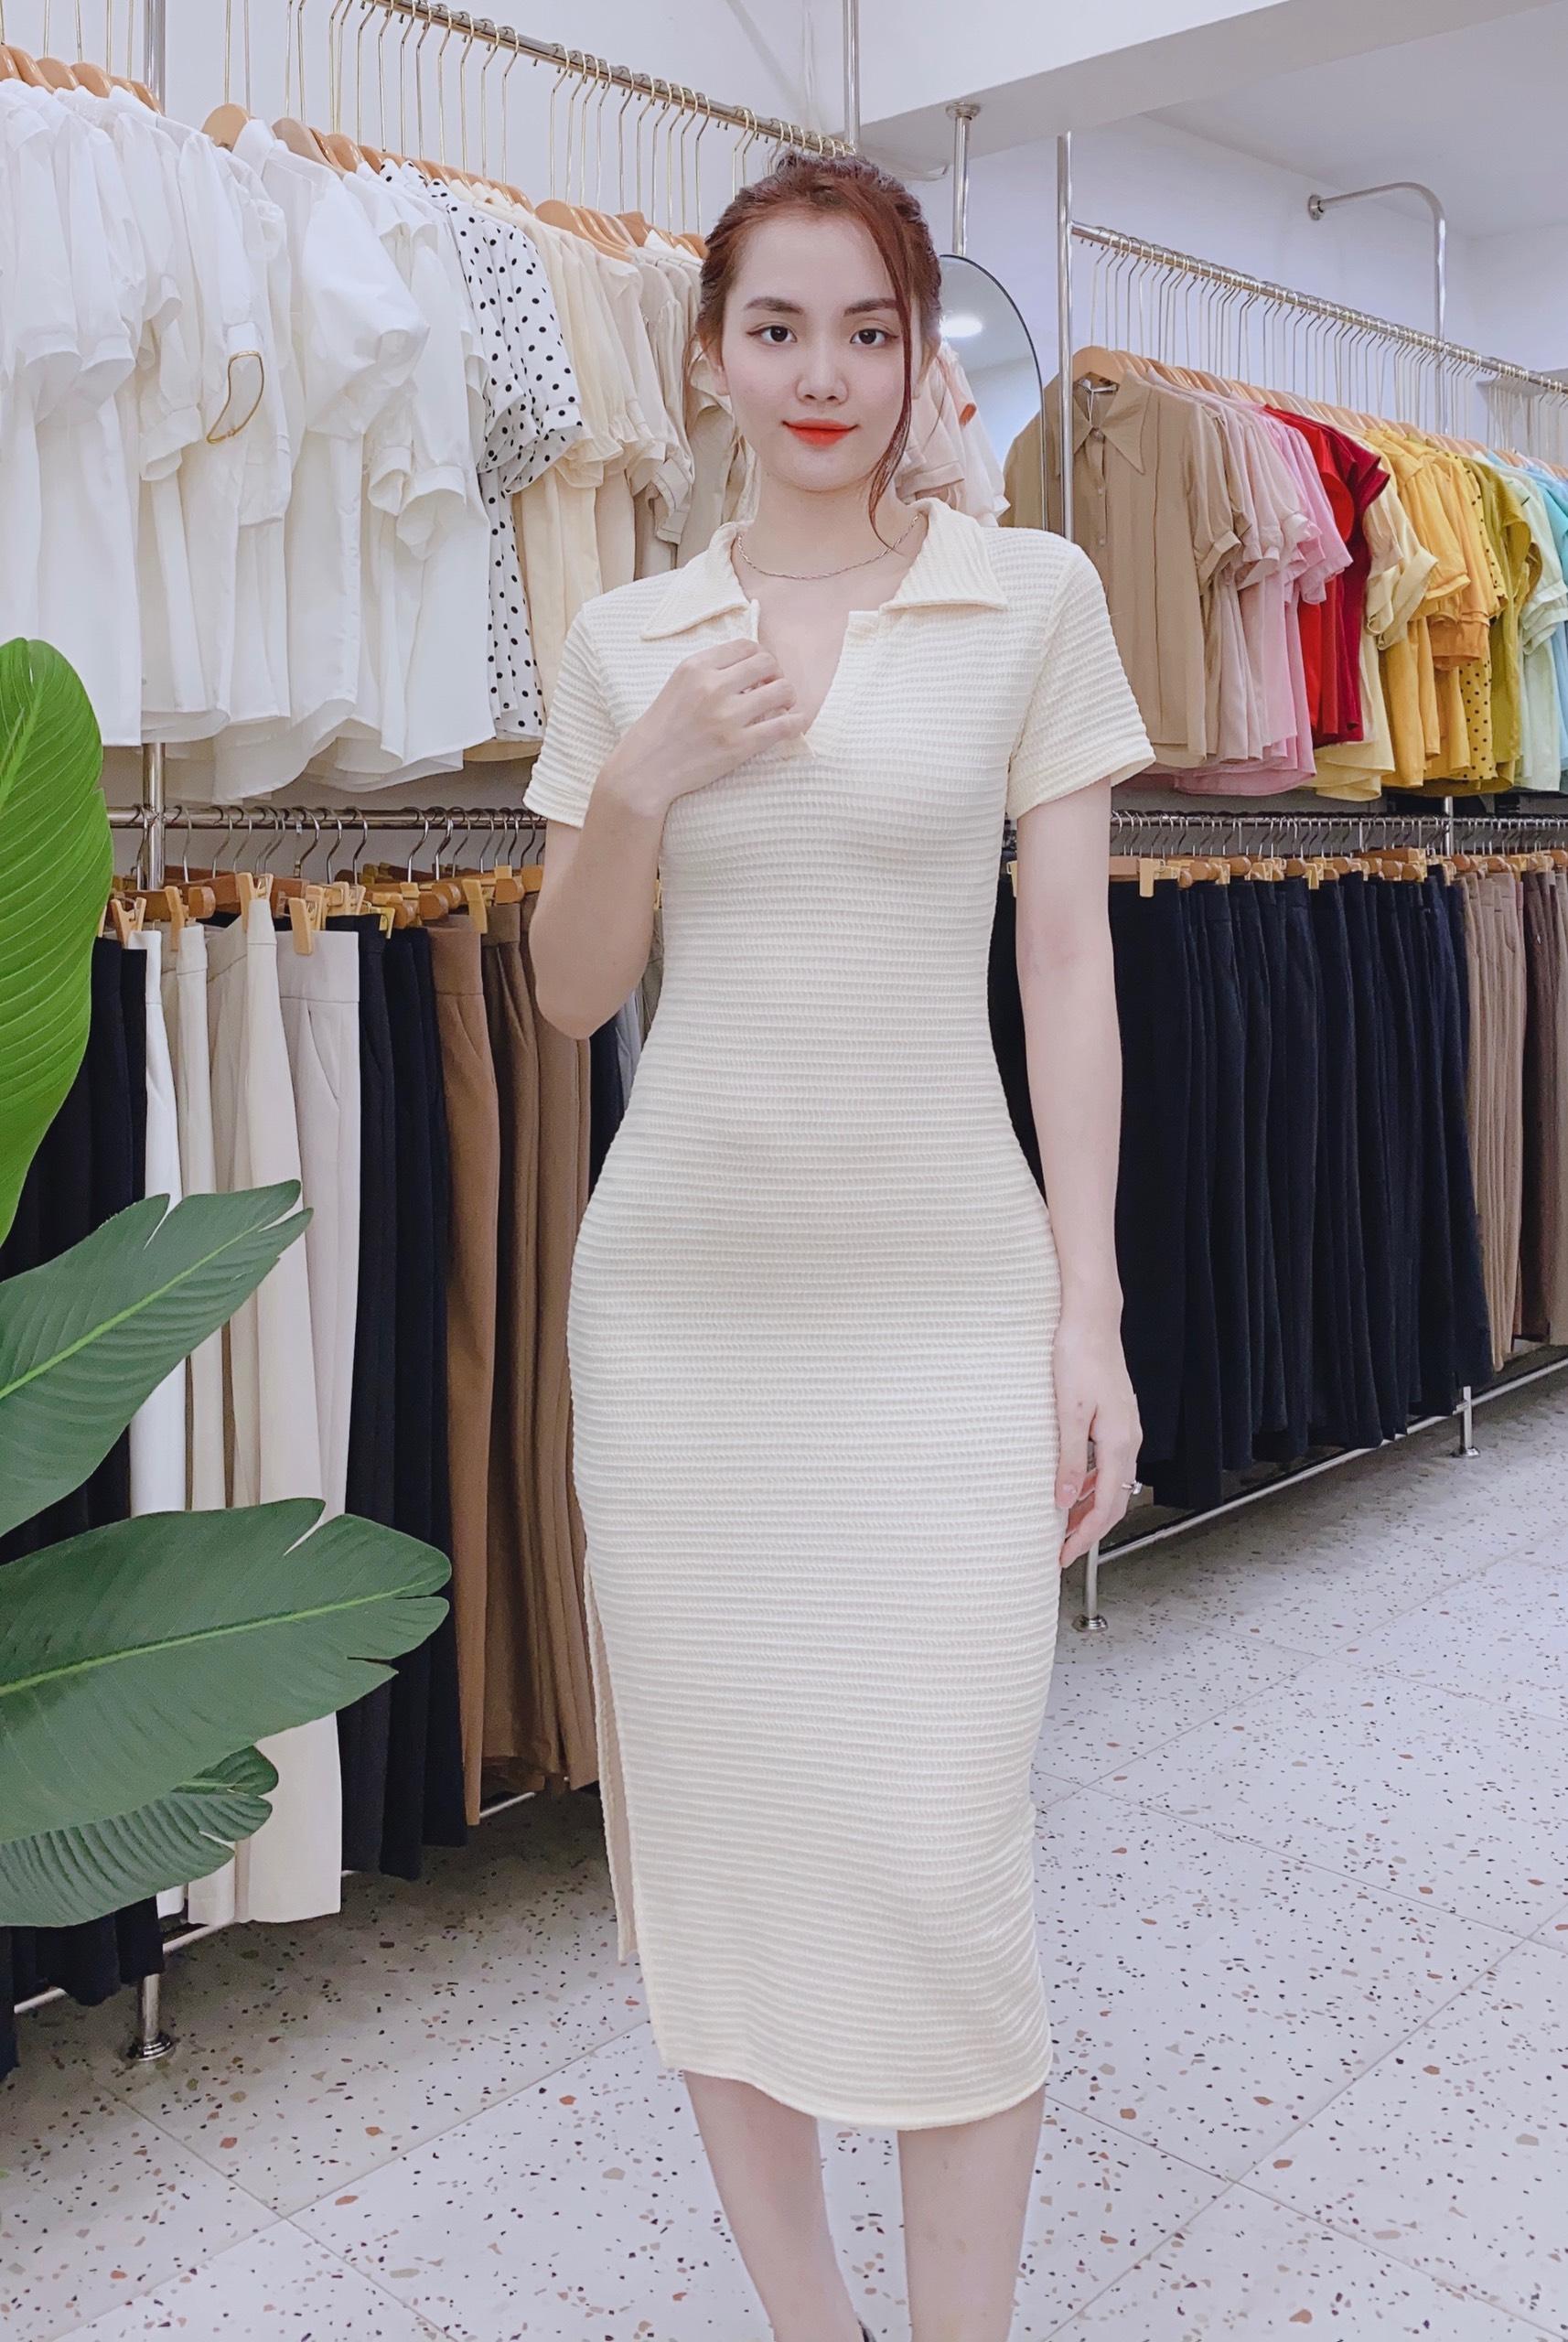 Hà Nội chuyển thời tiết - ngắm những mẫu váy Thu Đông ngọt lịm trong gió mùa